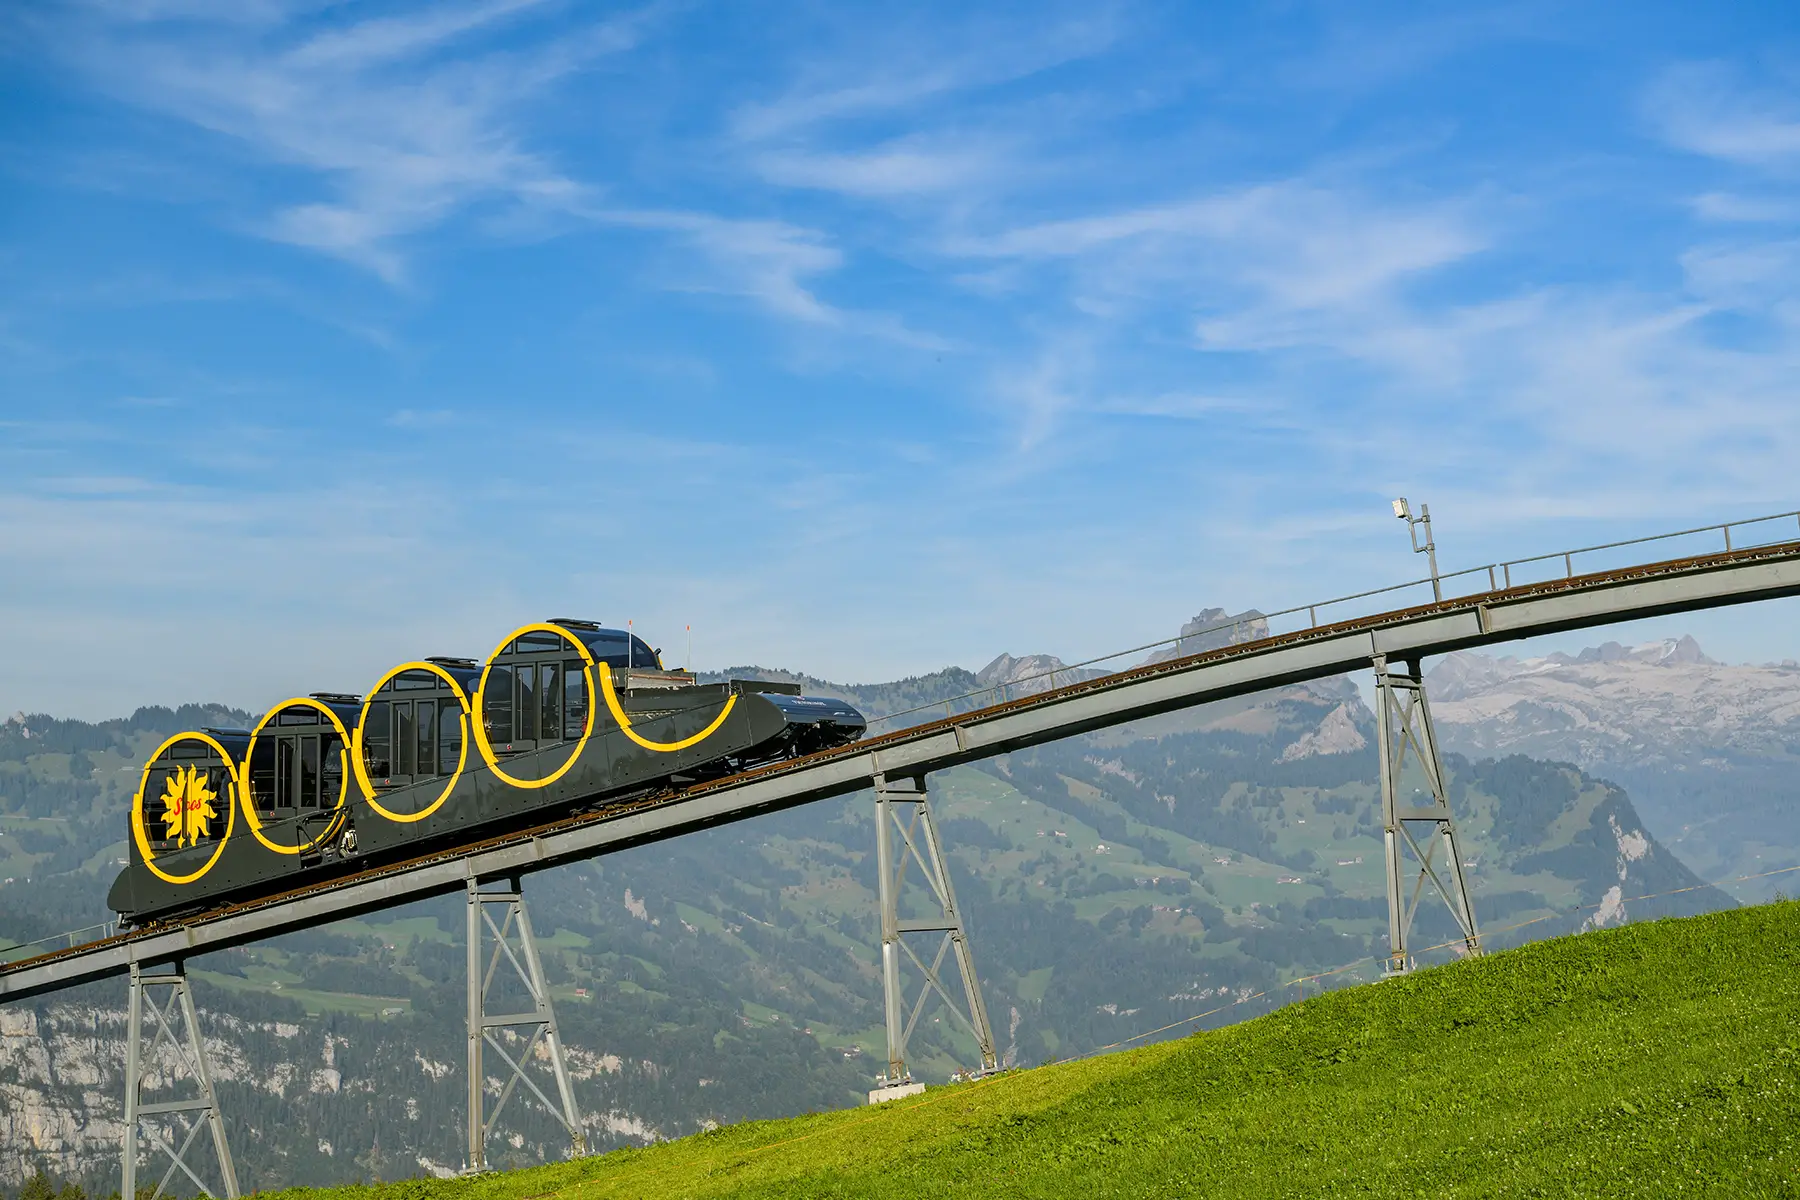 Stoosbahn Funicular